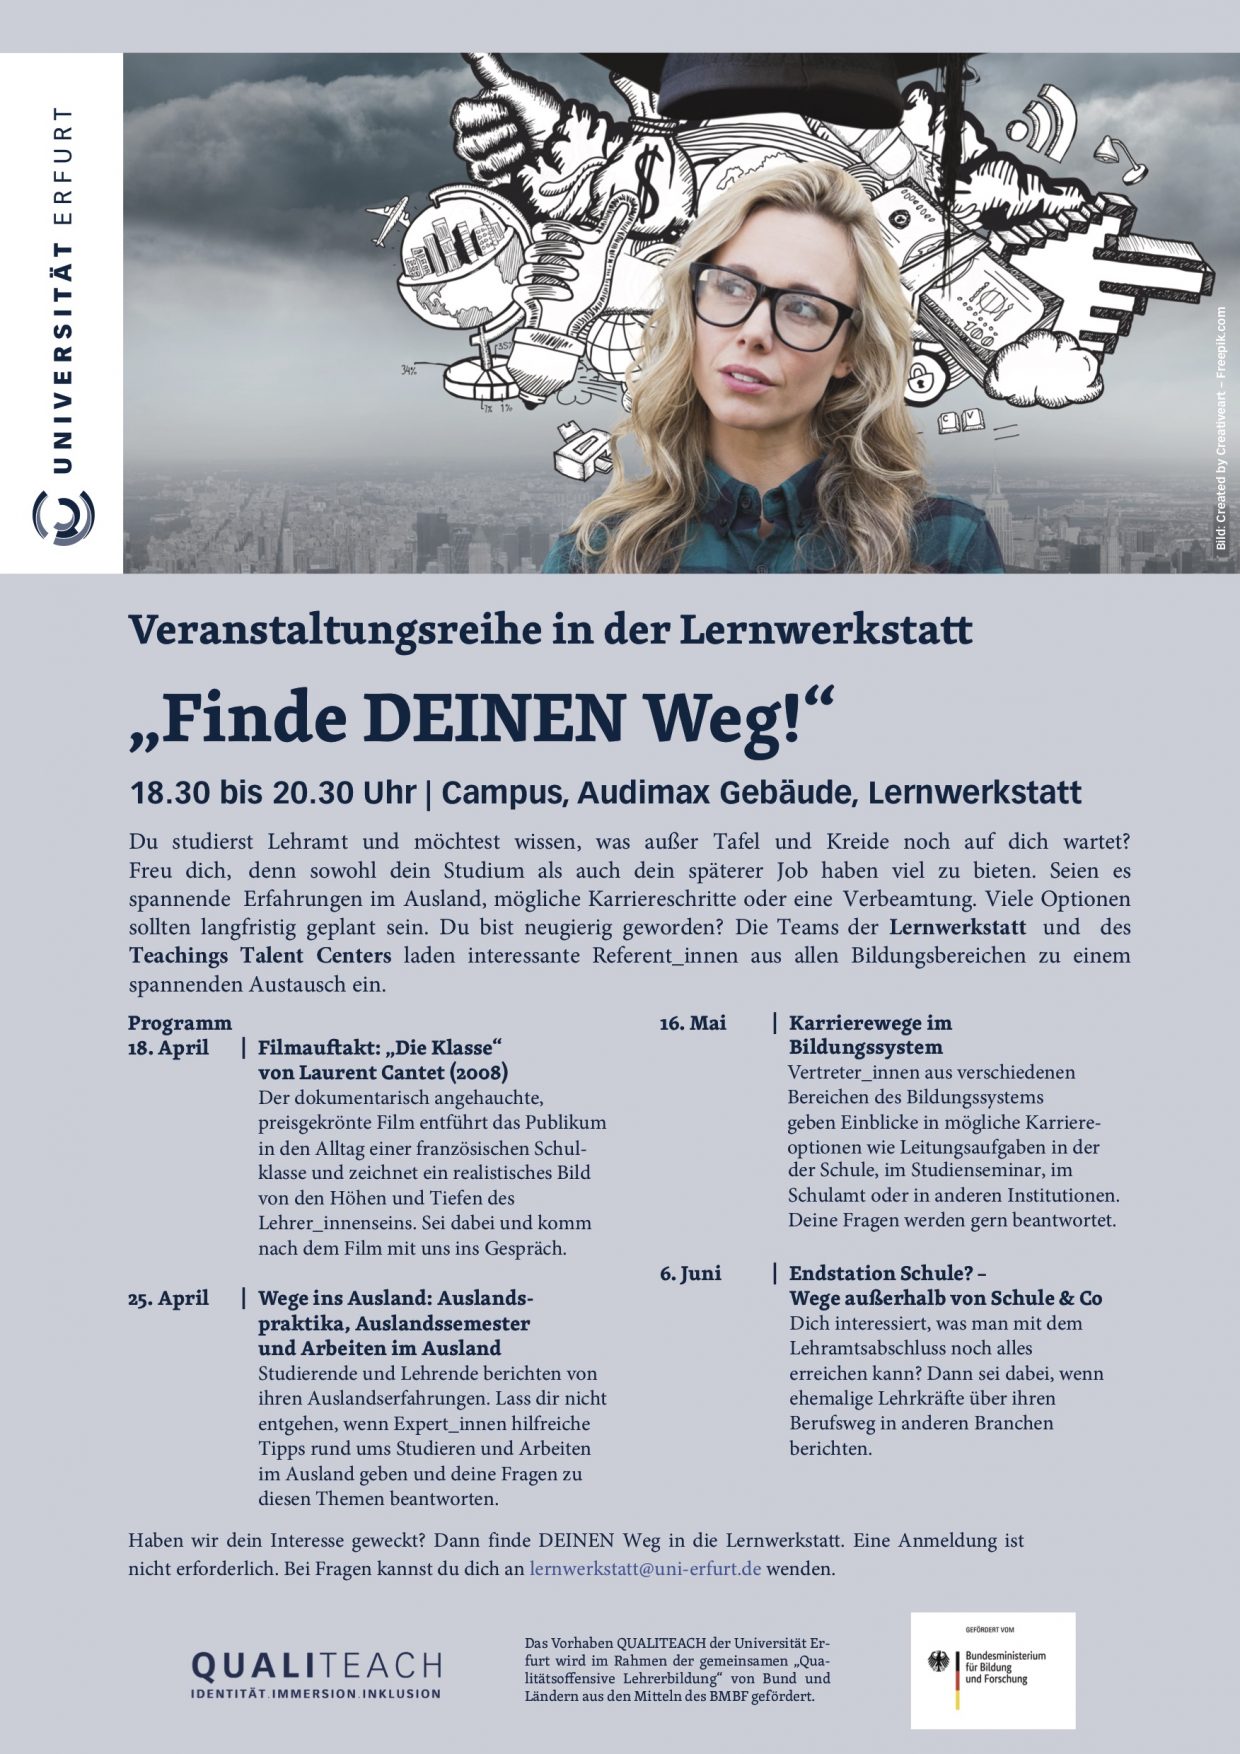 Plakat zur Veranstaltungsreihe der Lernwerkstatt "Finde DEINEN Weg" 2018